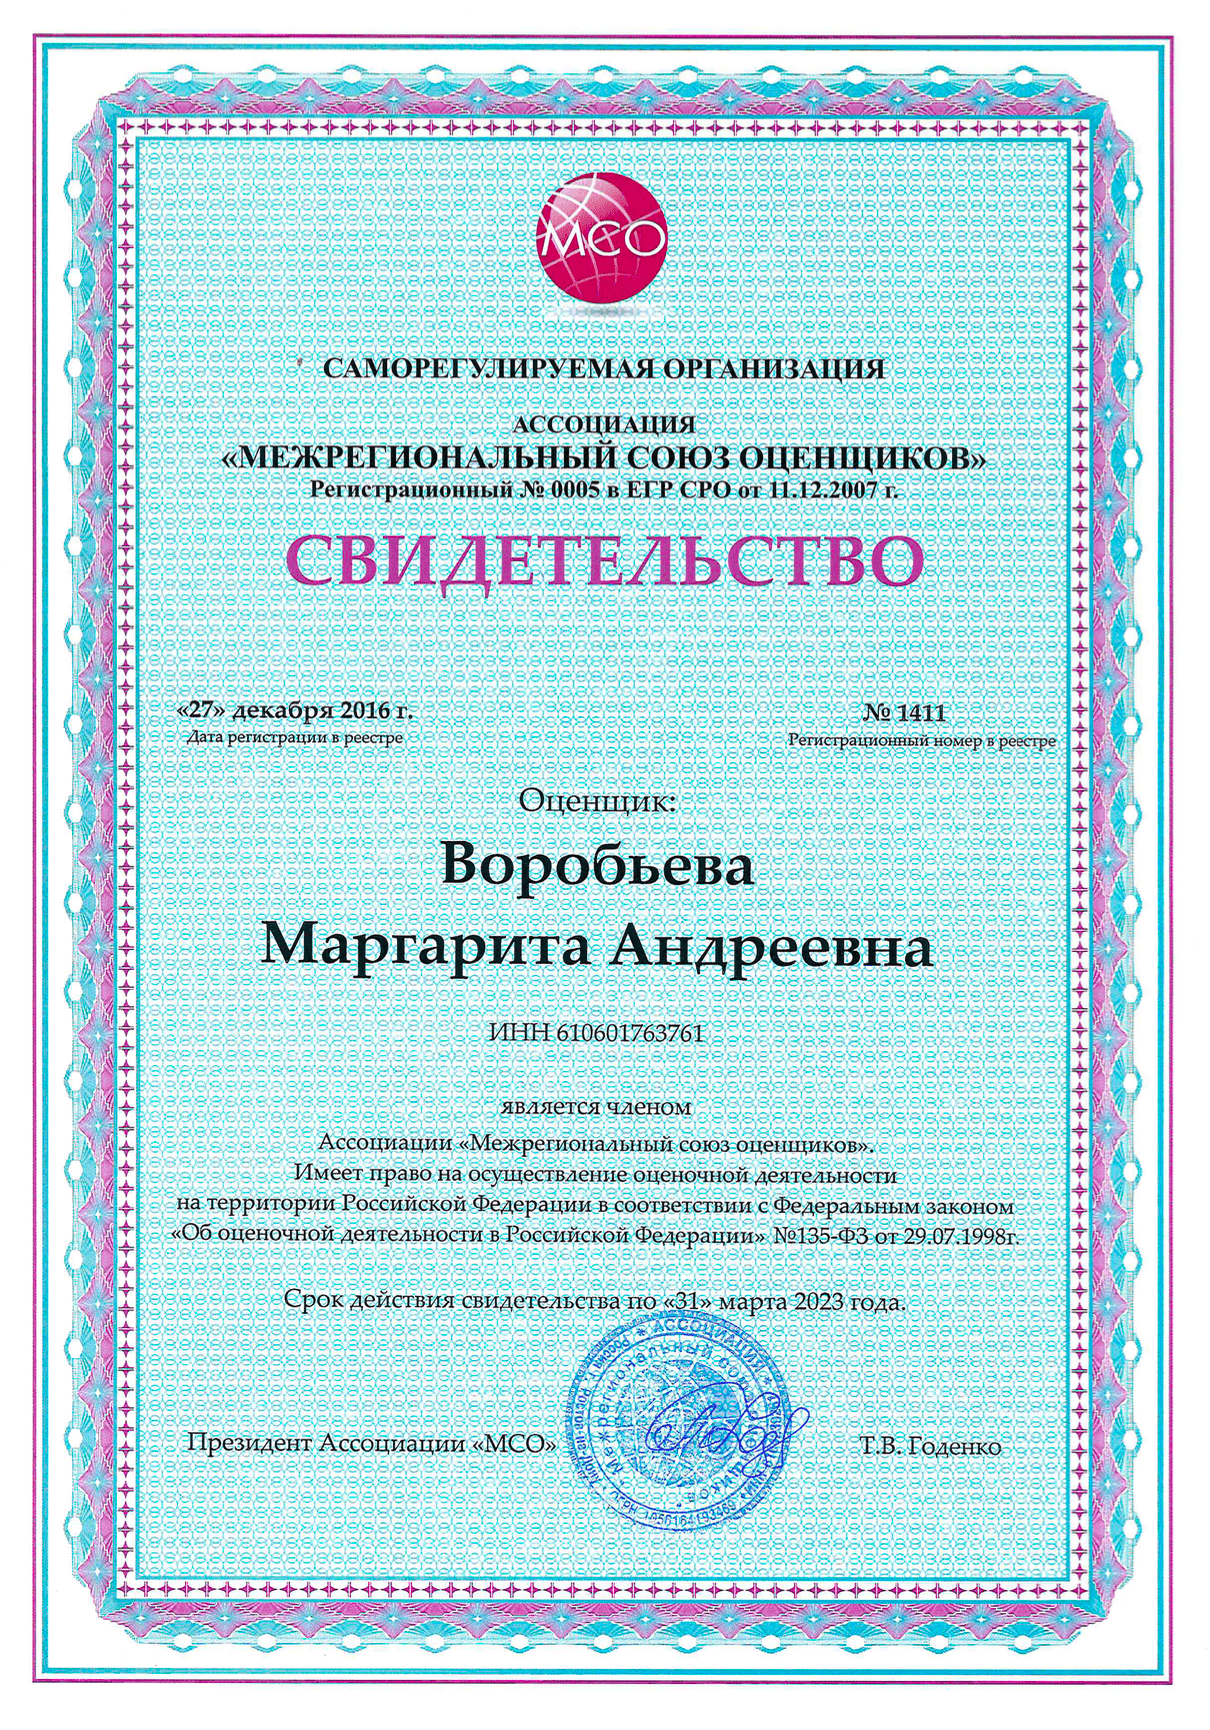 Свидетельство о членстве Воробьевой М. А. в СРО оценщиков